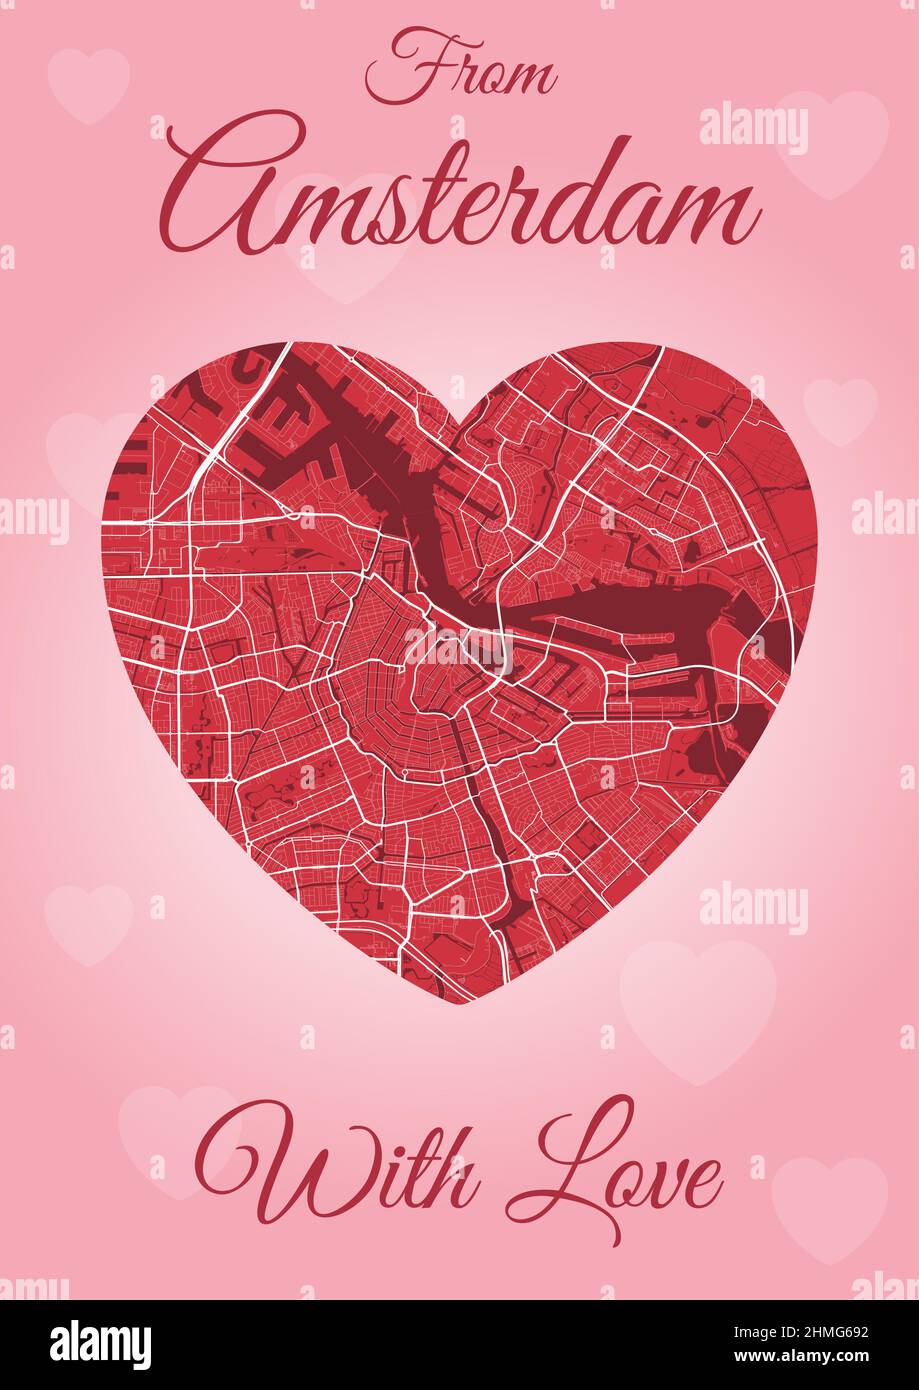 Von Amsterdam mit Liebeskarte, Stadtplan in Herzform. Vertikale A4 Rosa und rote Farbvektordarstellung. Ich liebe City travel City Scape. Stock Vektor